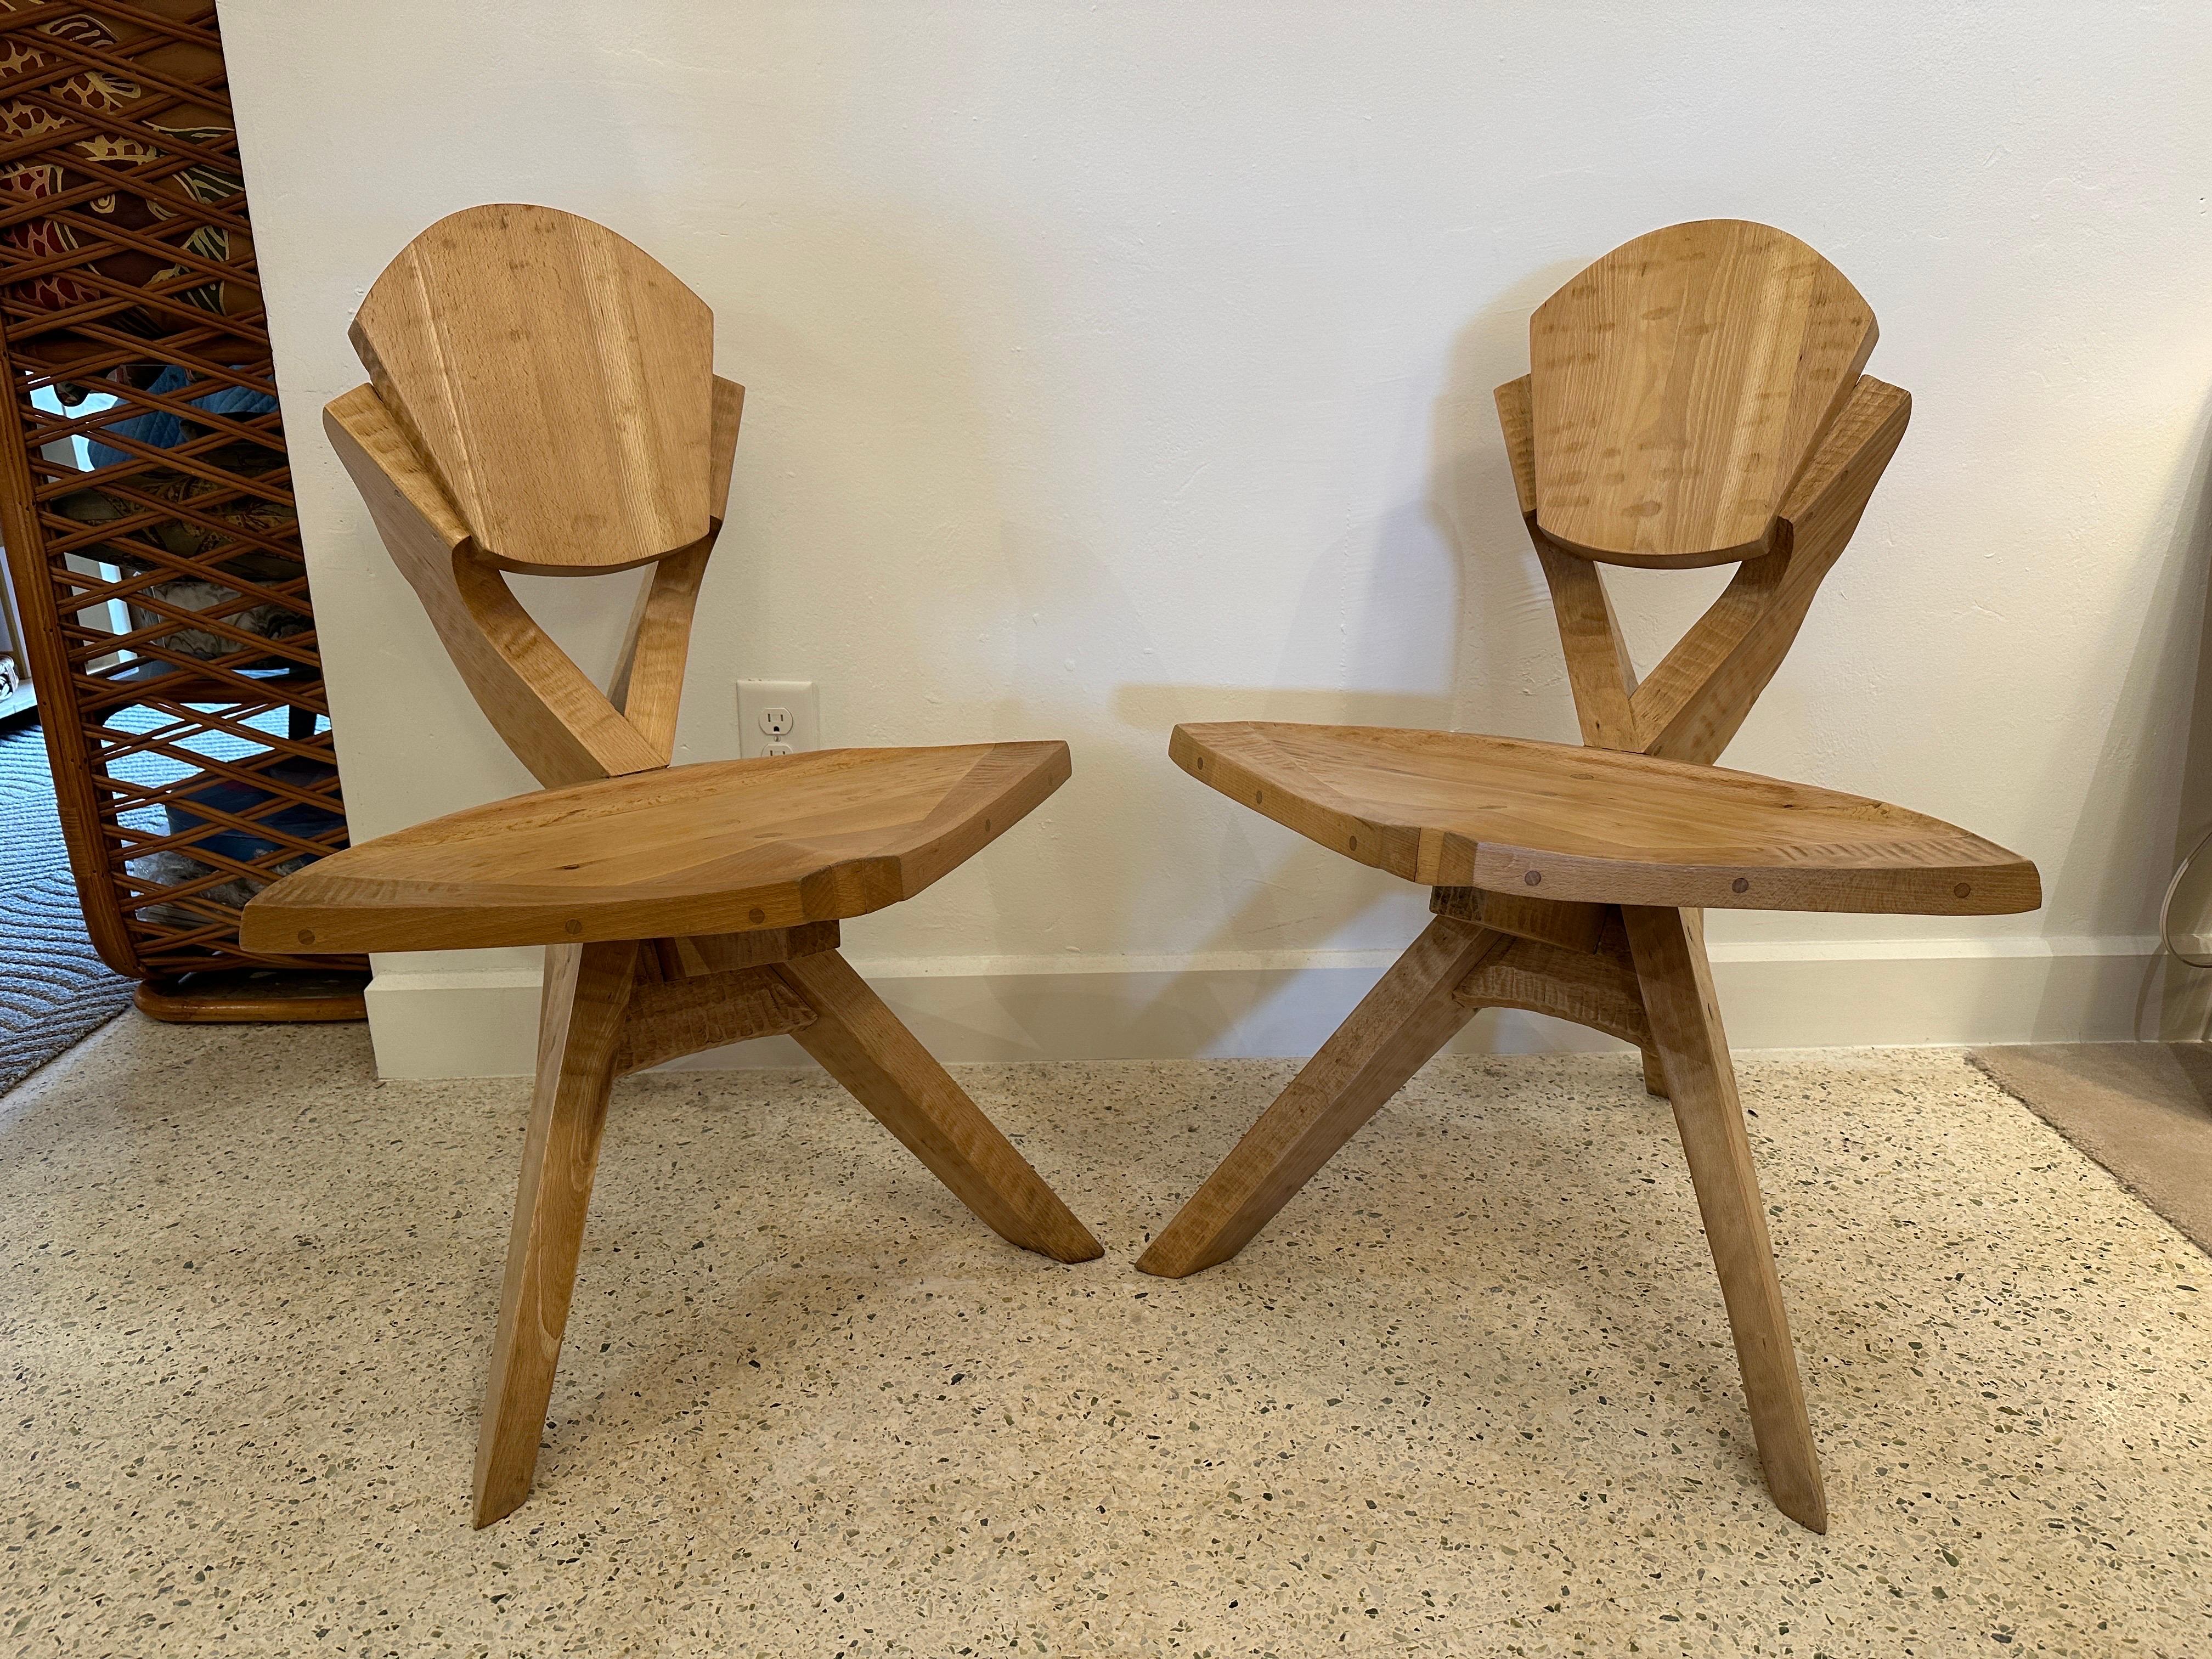 Cette paire de chaises sculpturales en bois, fabriquées à la main, comporte 3 pieds et des détails extraordinaires au niveau du dossier et de l'assise - VOIR les images détaillées et la vidéo fournies. Une architecture magnifique !  CET ARTICLE EST